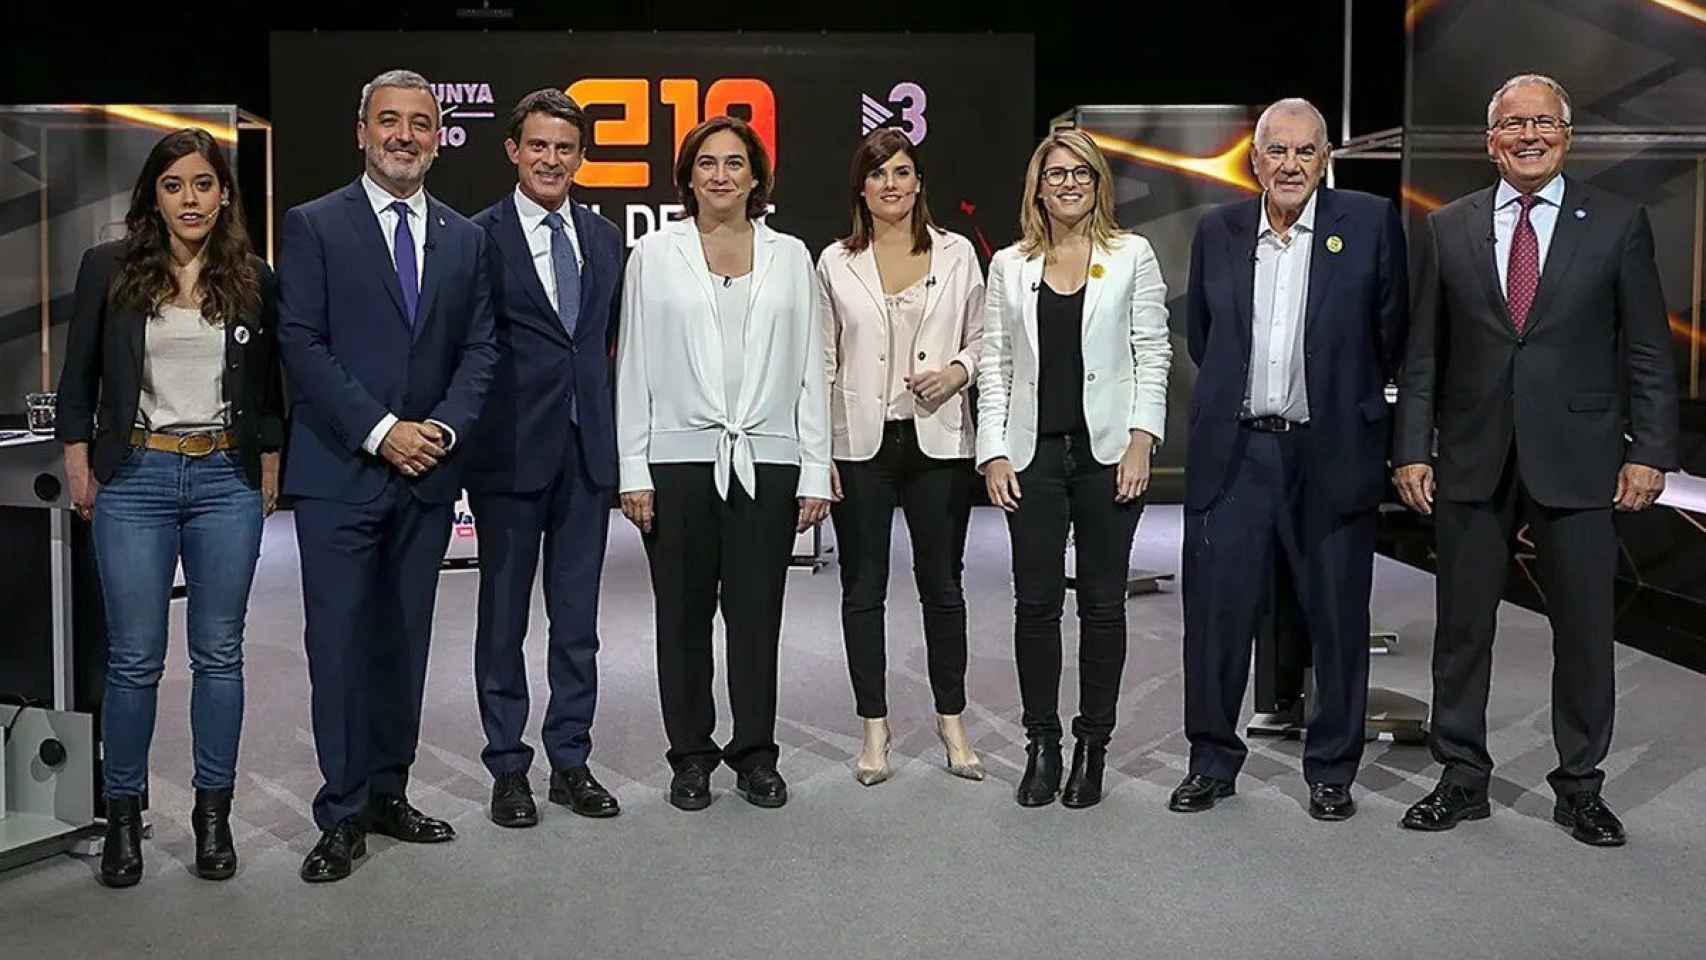 El debate para la alcaldía de Barcelona en TV3, en las últimas elecciones, en 2019 / TV3